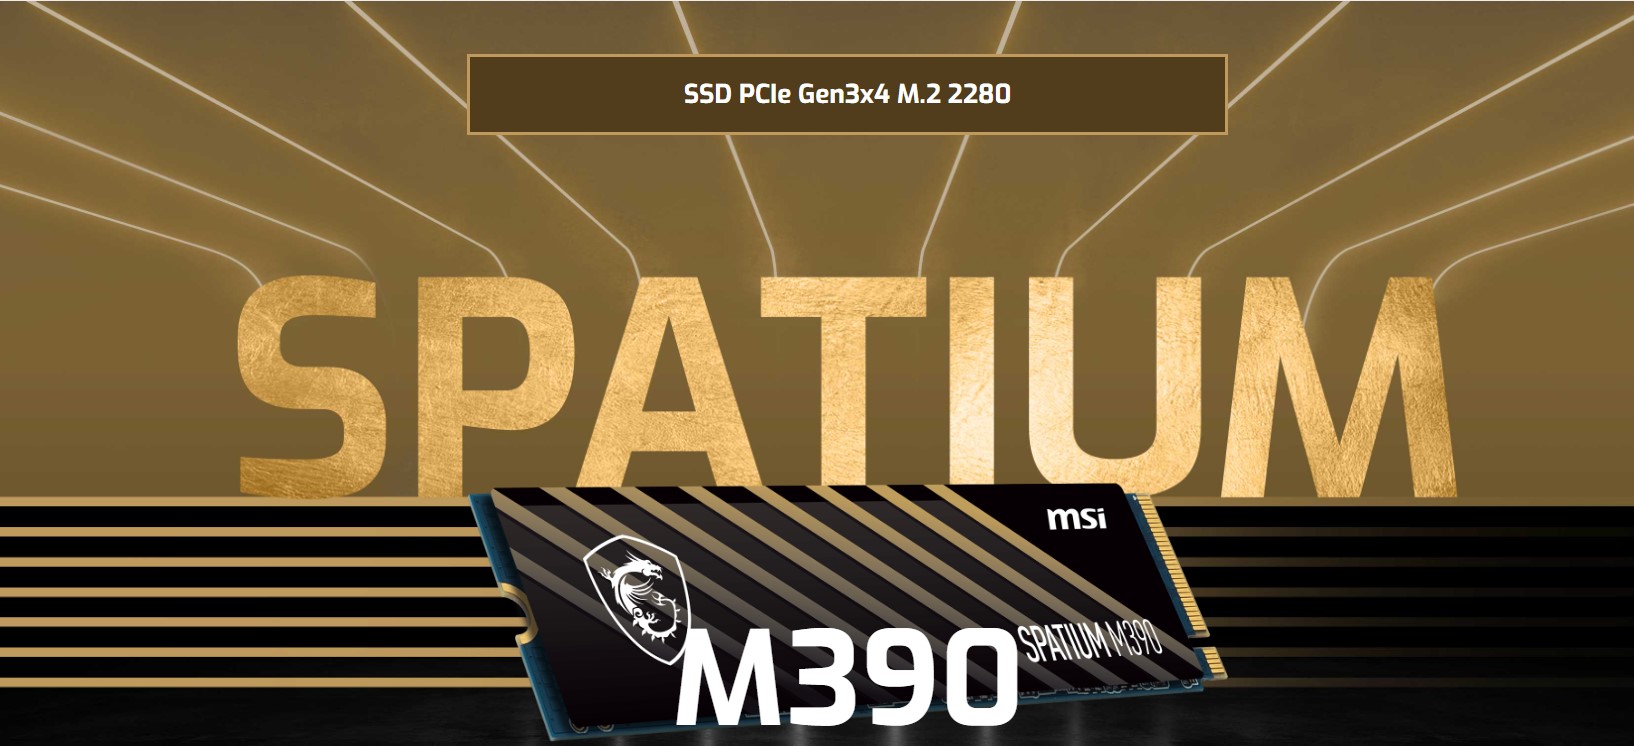 Ổ cứng SSD MSI SPATIUM M390